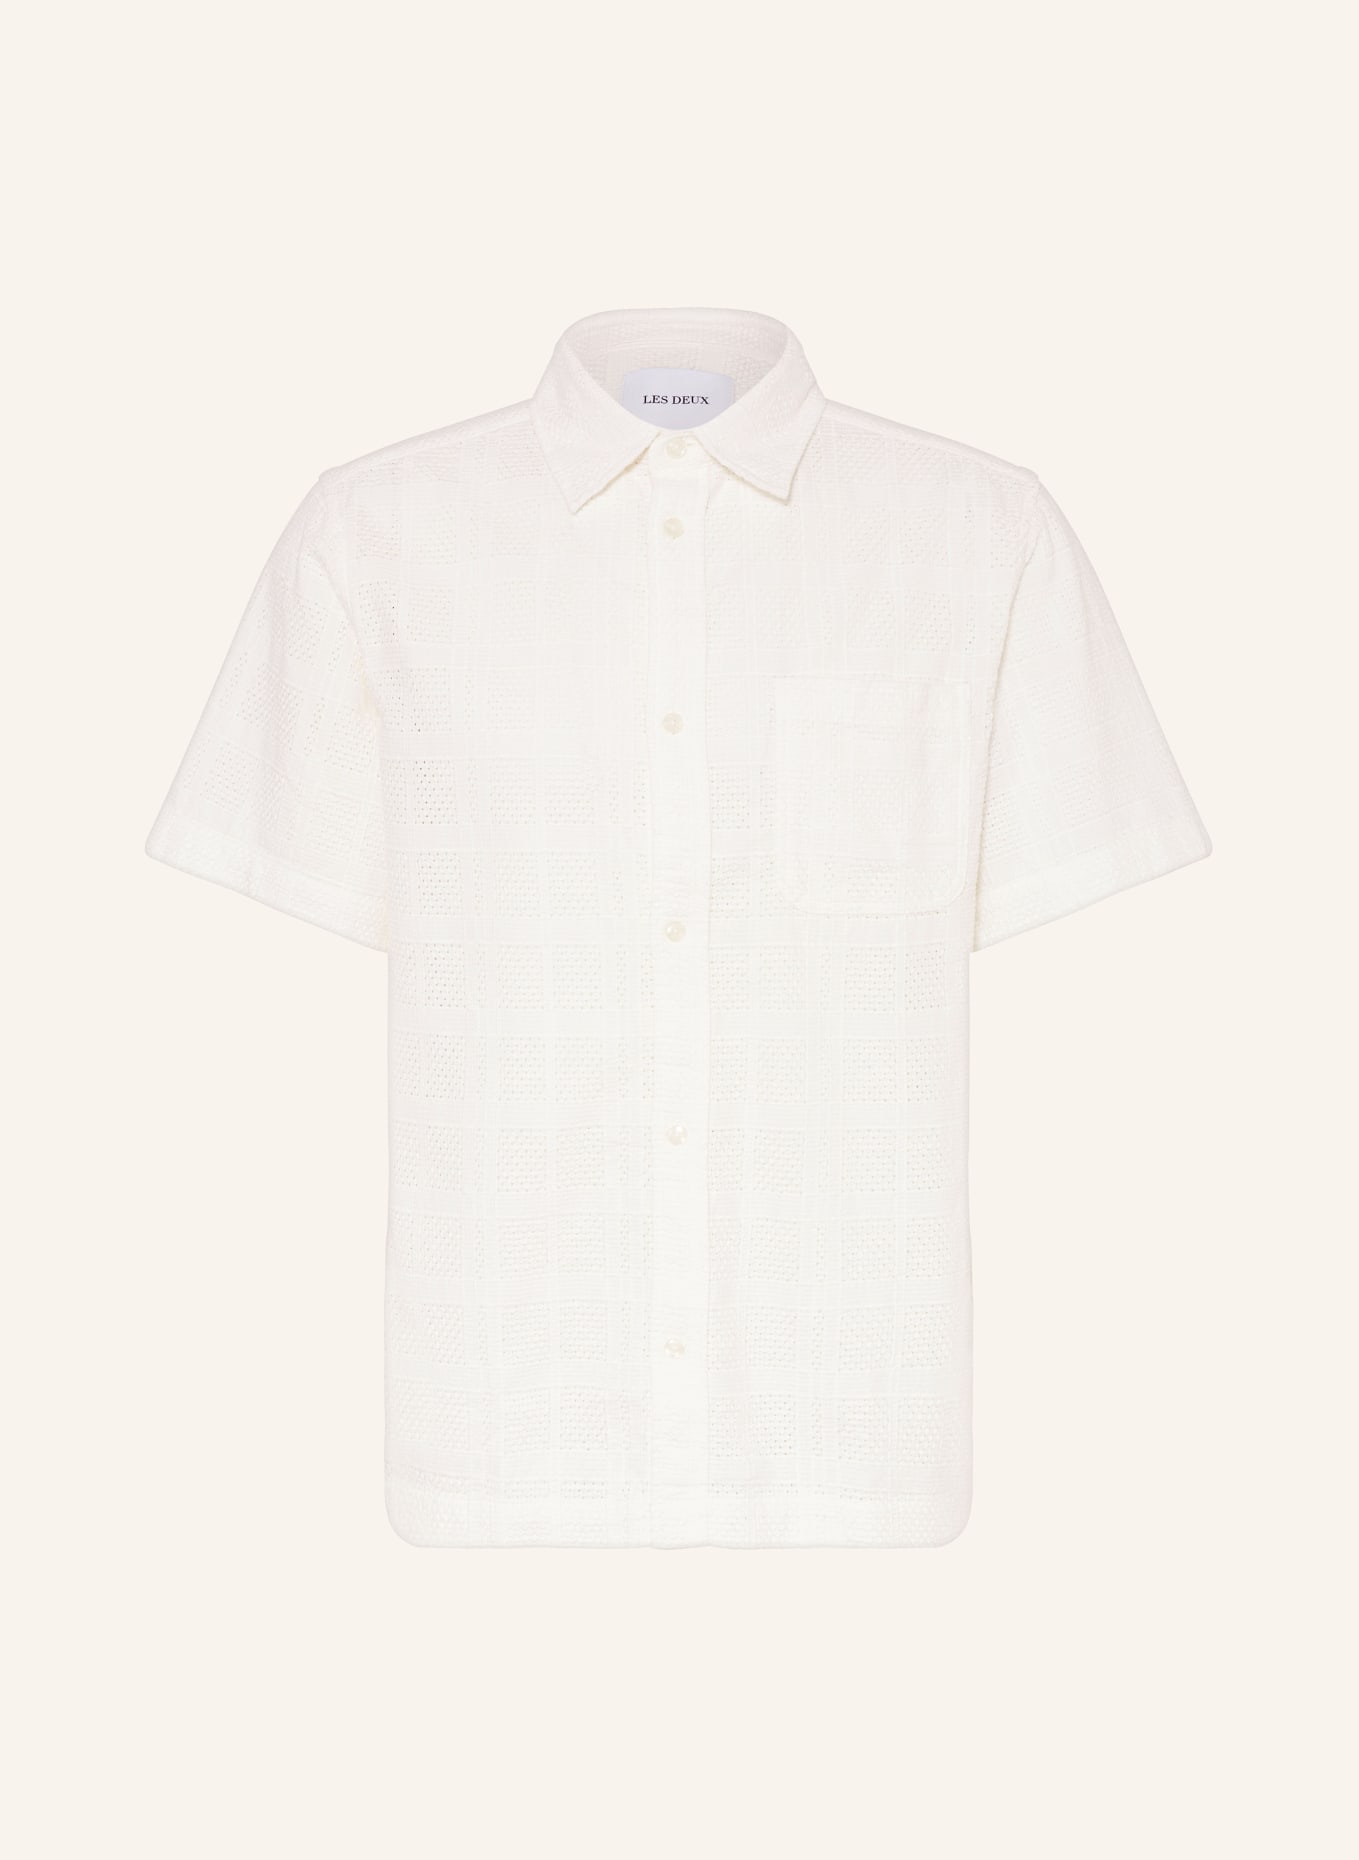 LES DEUX Short sleeve shirt CHARLIE regular fit, Color: WHITE (Image 1)